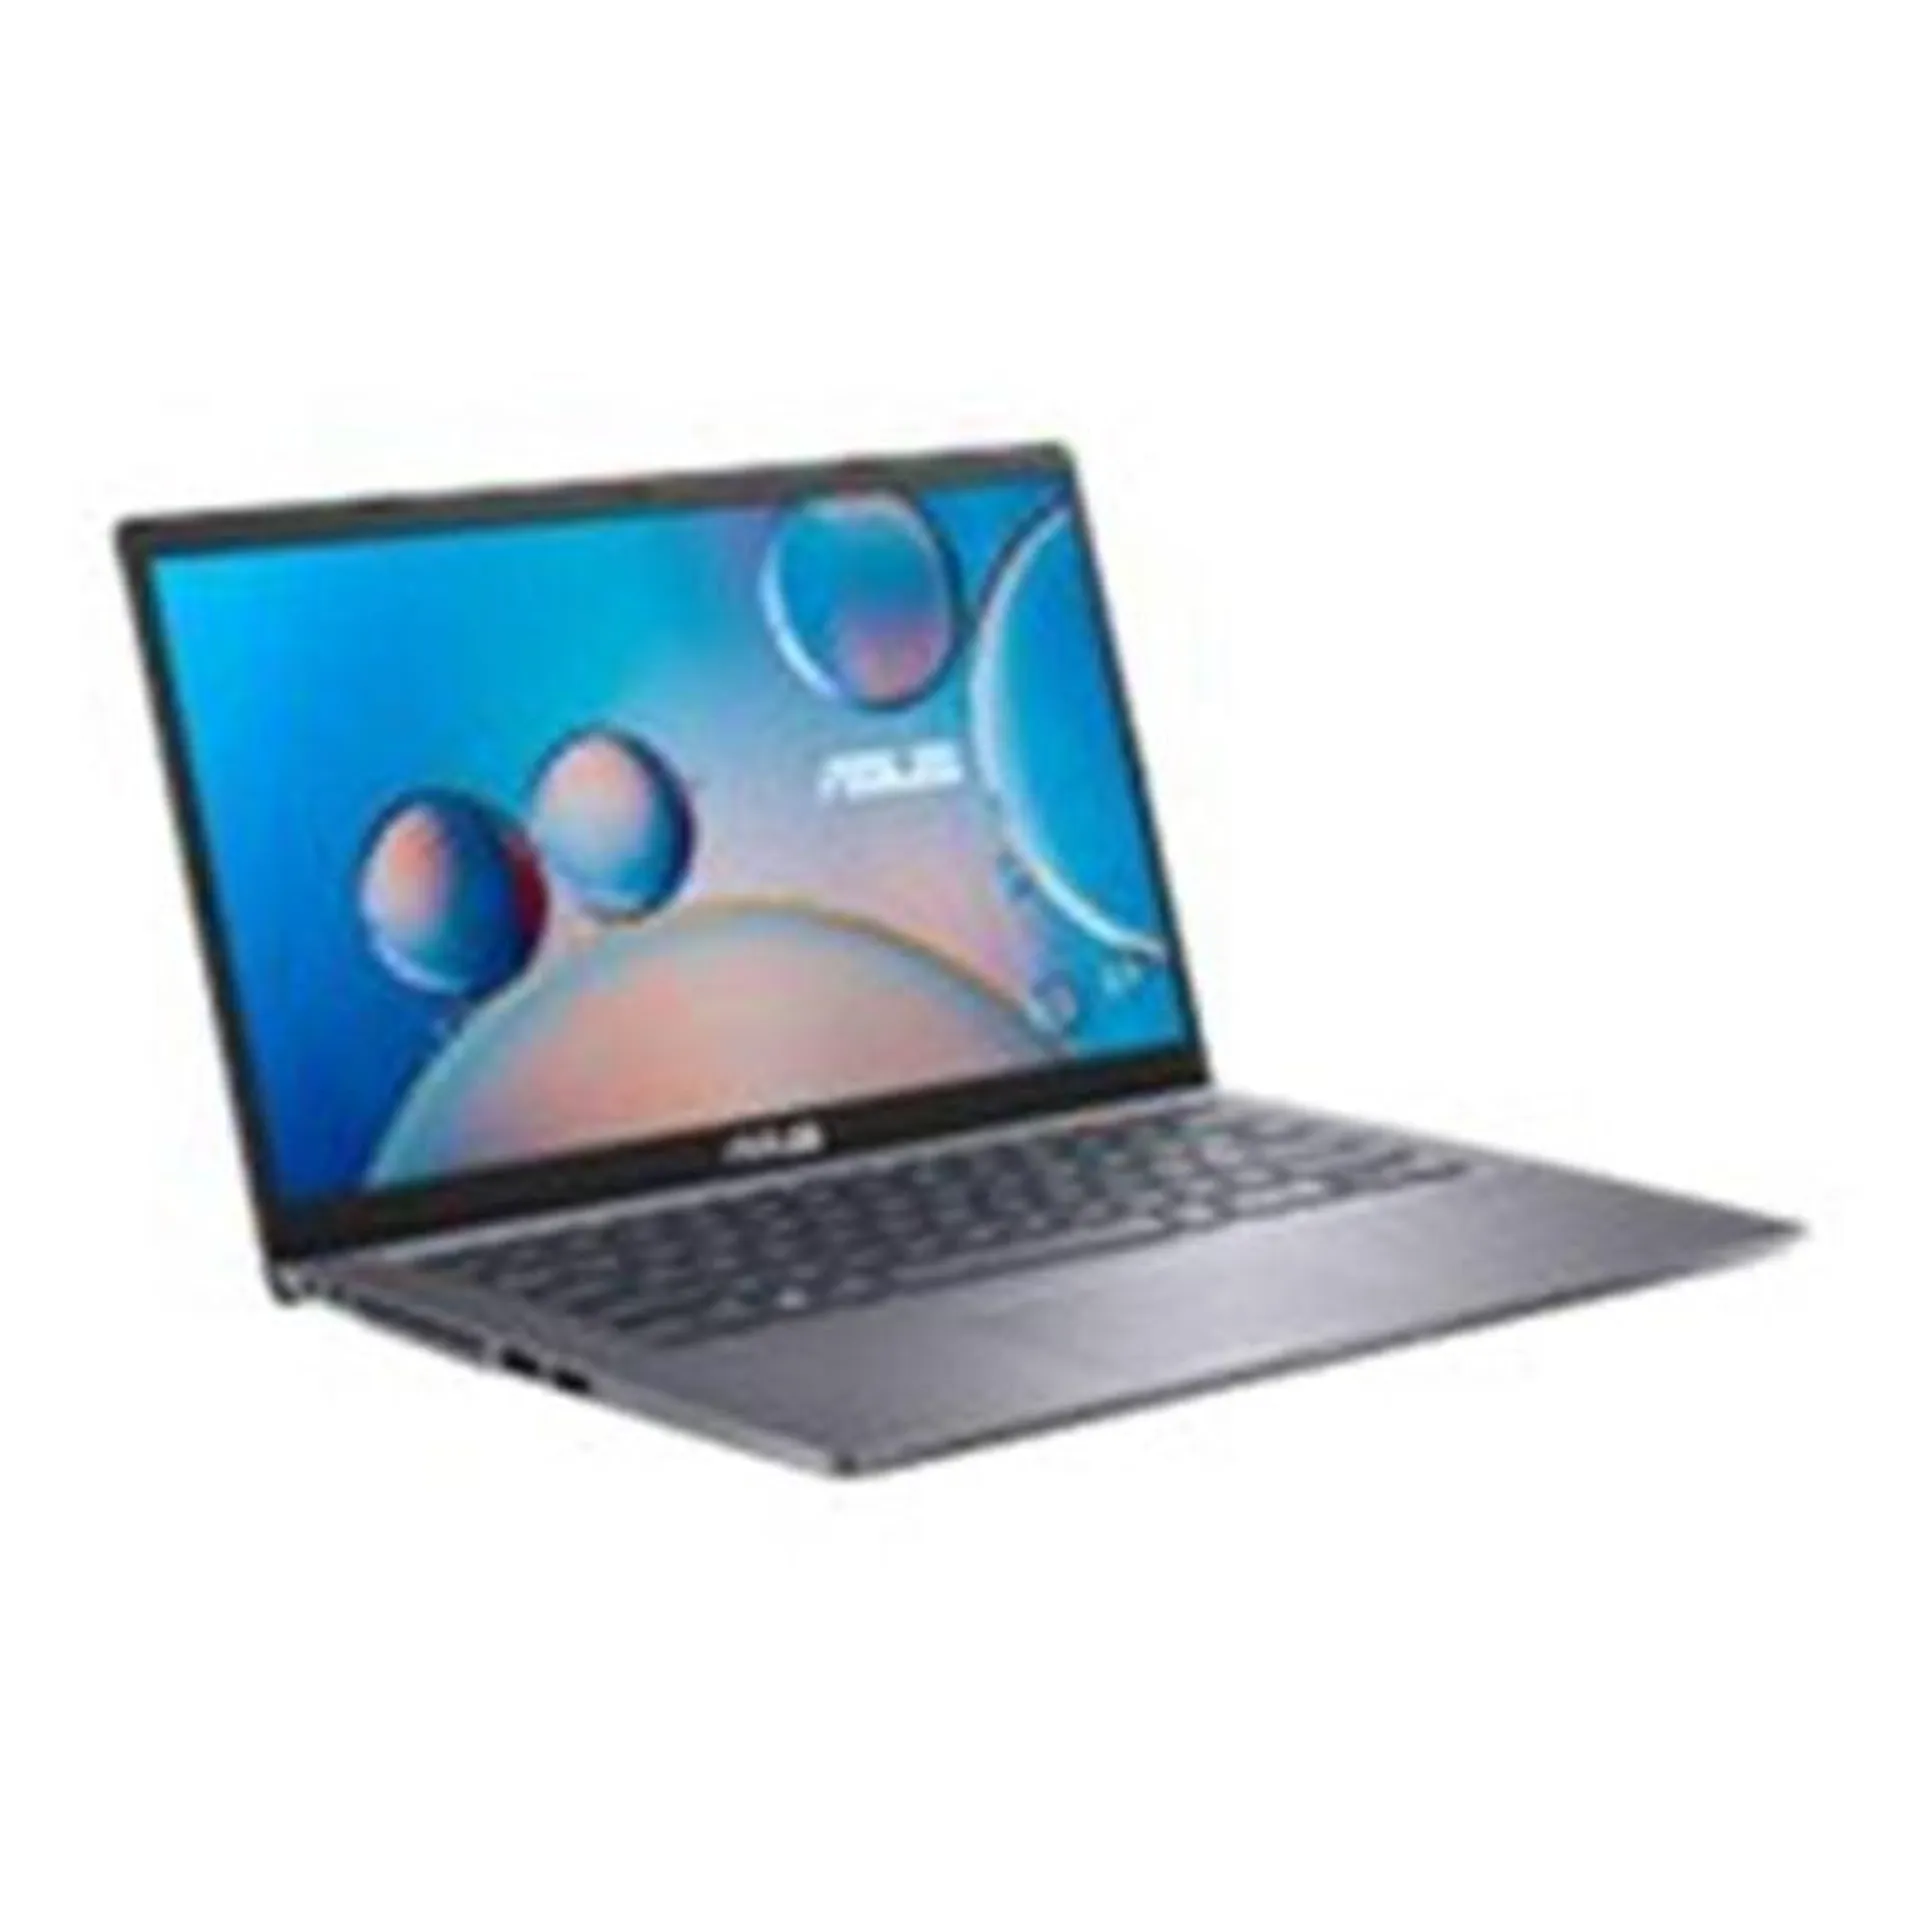 Asus Laptop - R465JA-EB2444W